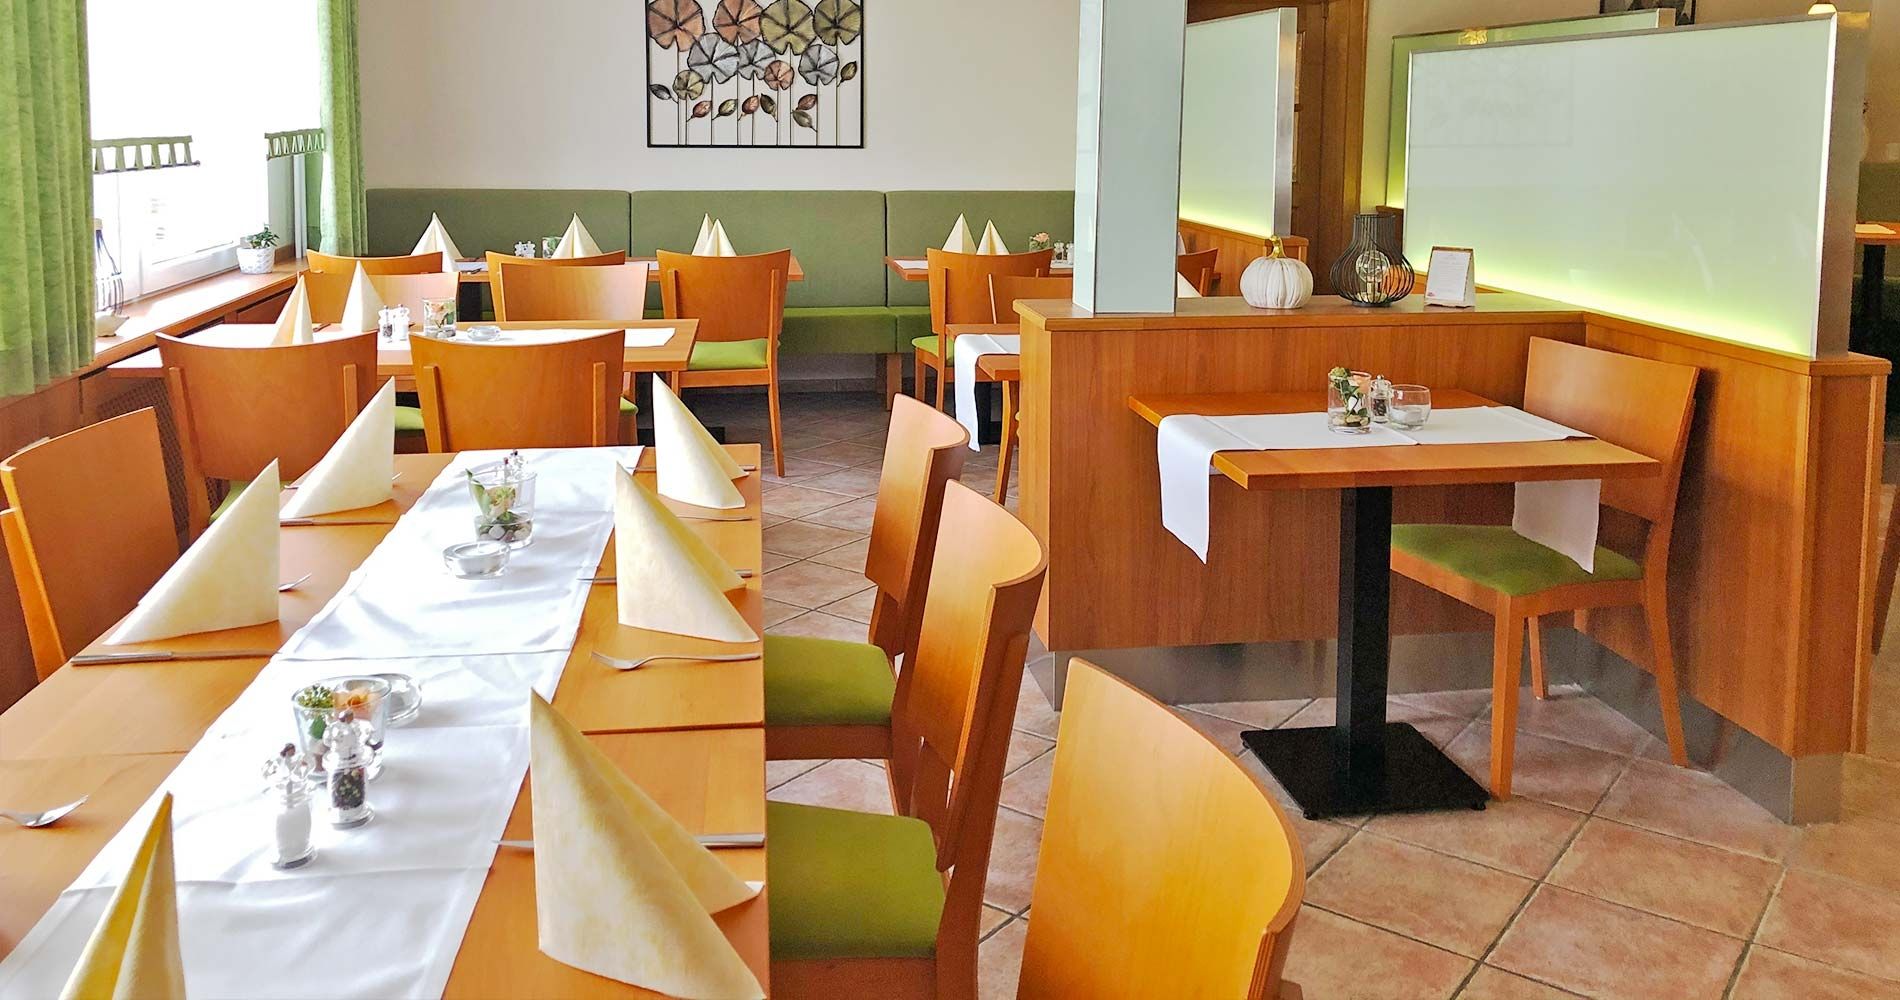 Speisegaststätte Orth - Restaurant Lenderscheid - Das Restaurant - Speisegaststätte Orth